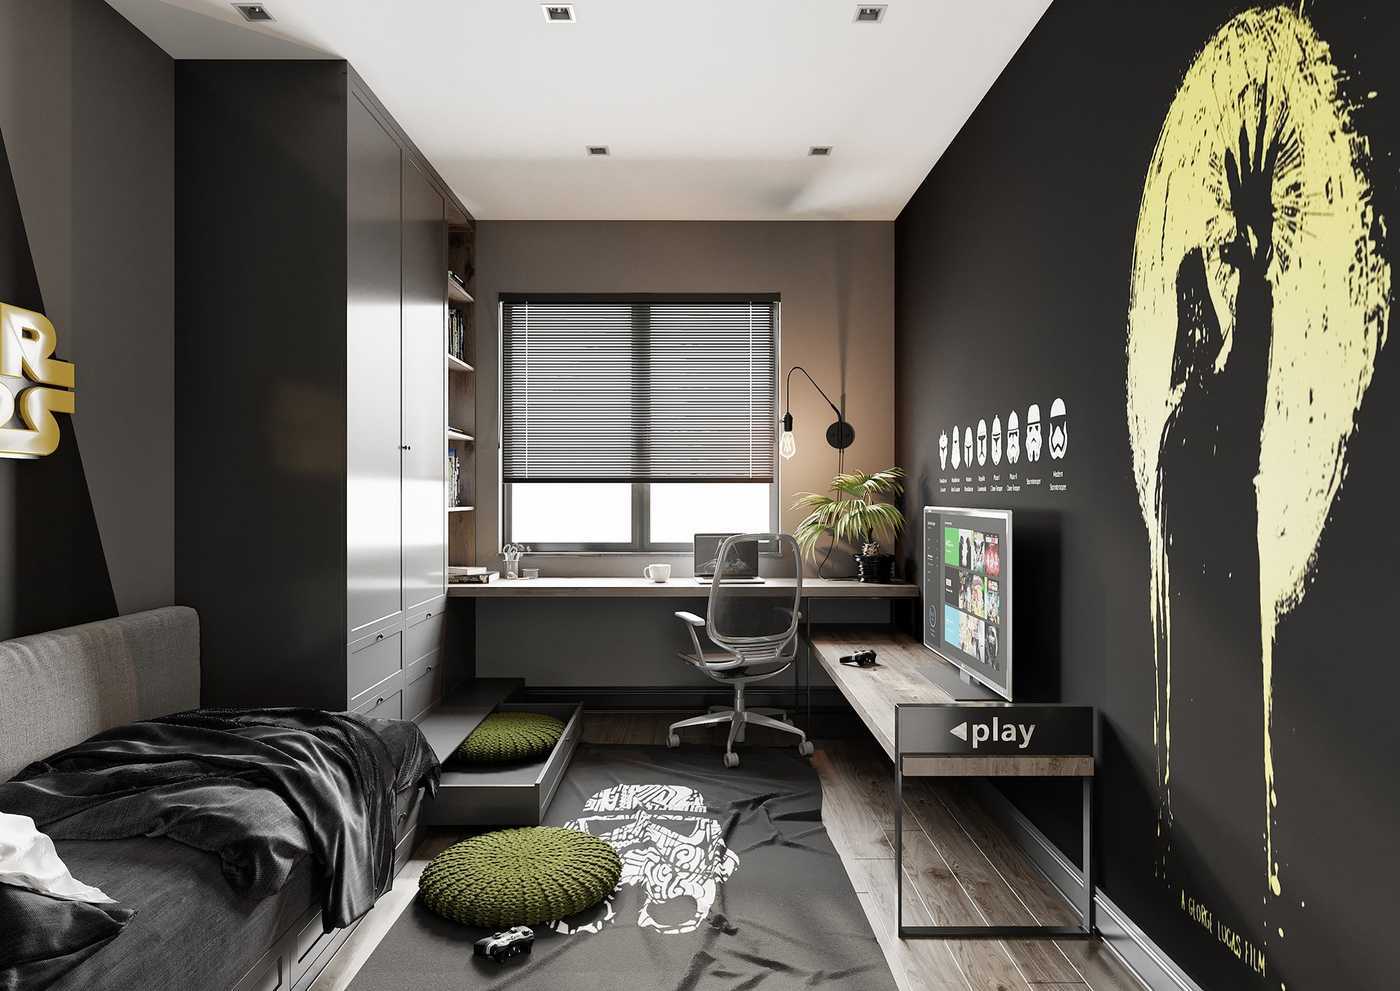 Комната для компьютерных игр, тема Дарта Вейдера, чёрная стена